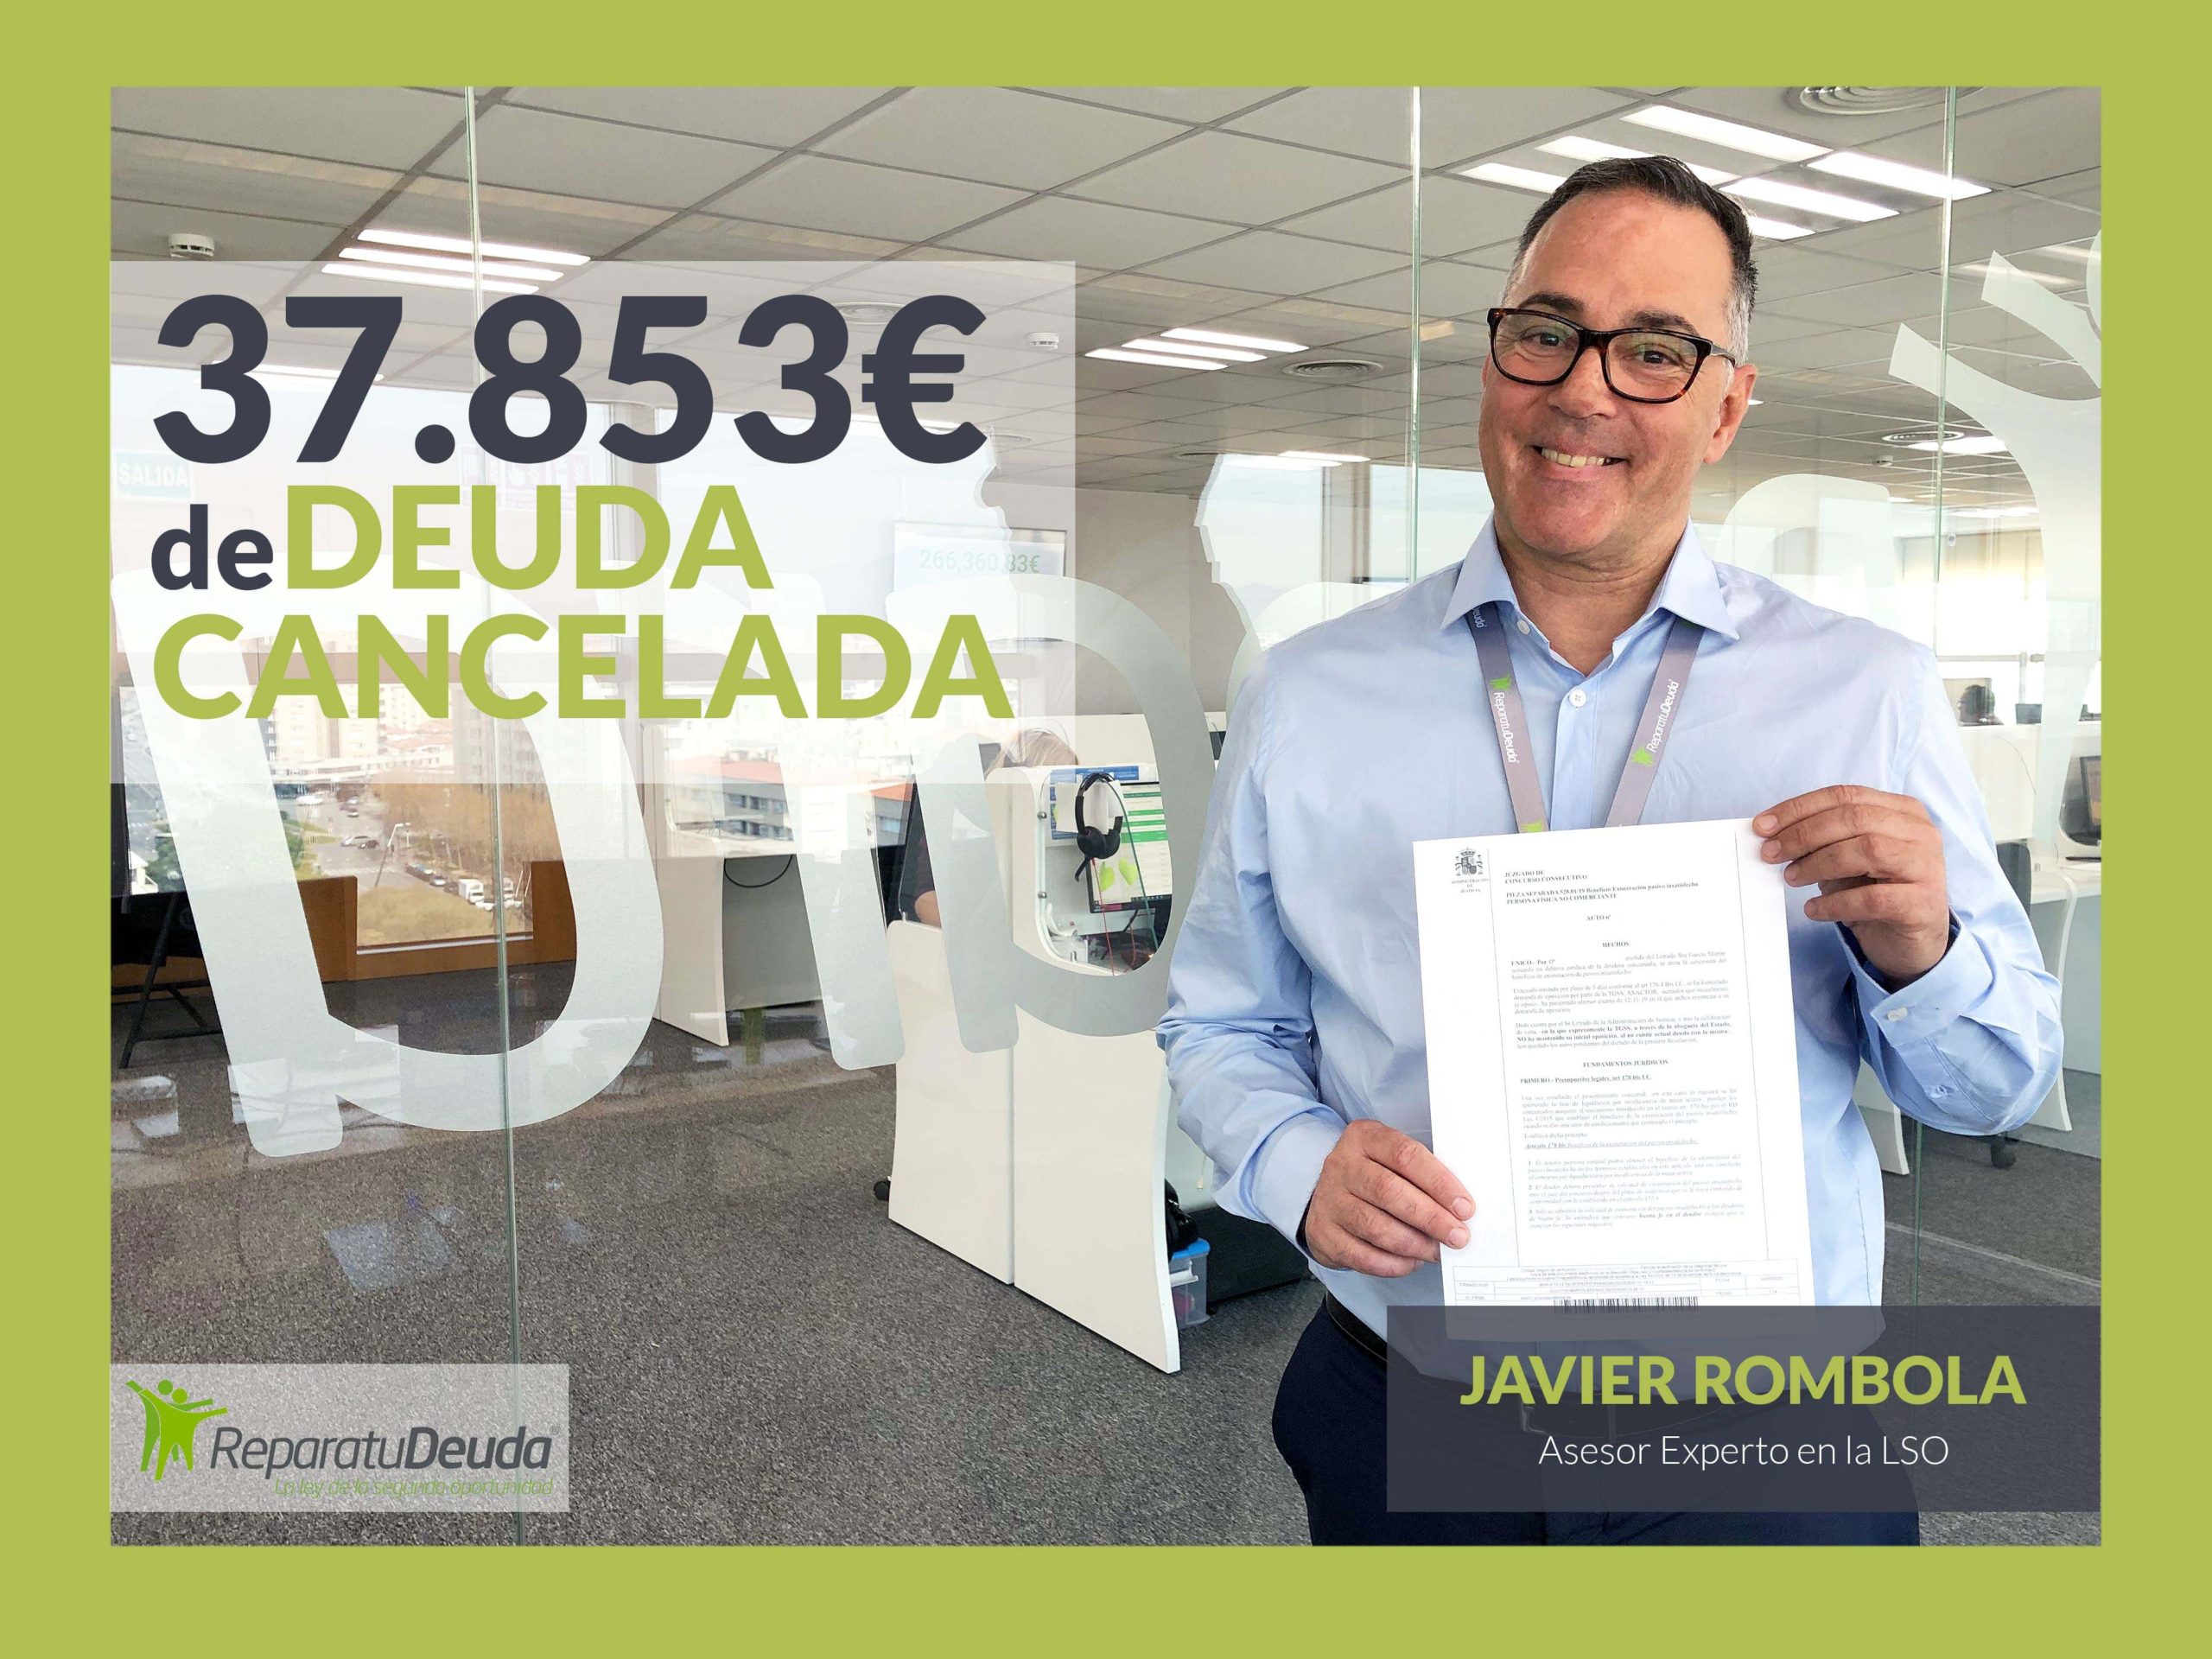 Repara tu deuda abogados cancela 37.853 euros a 12 bancos en Mallorca con la Ley de Segunda Oportunidad